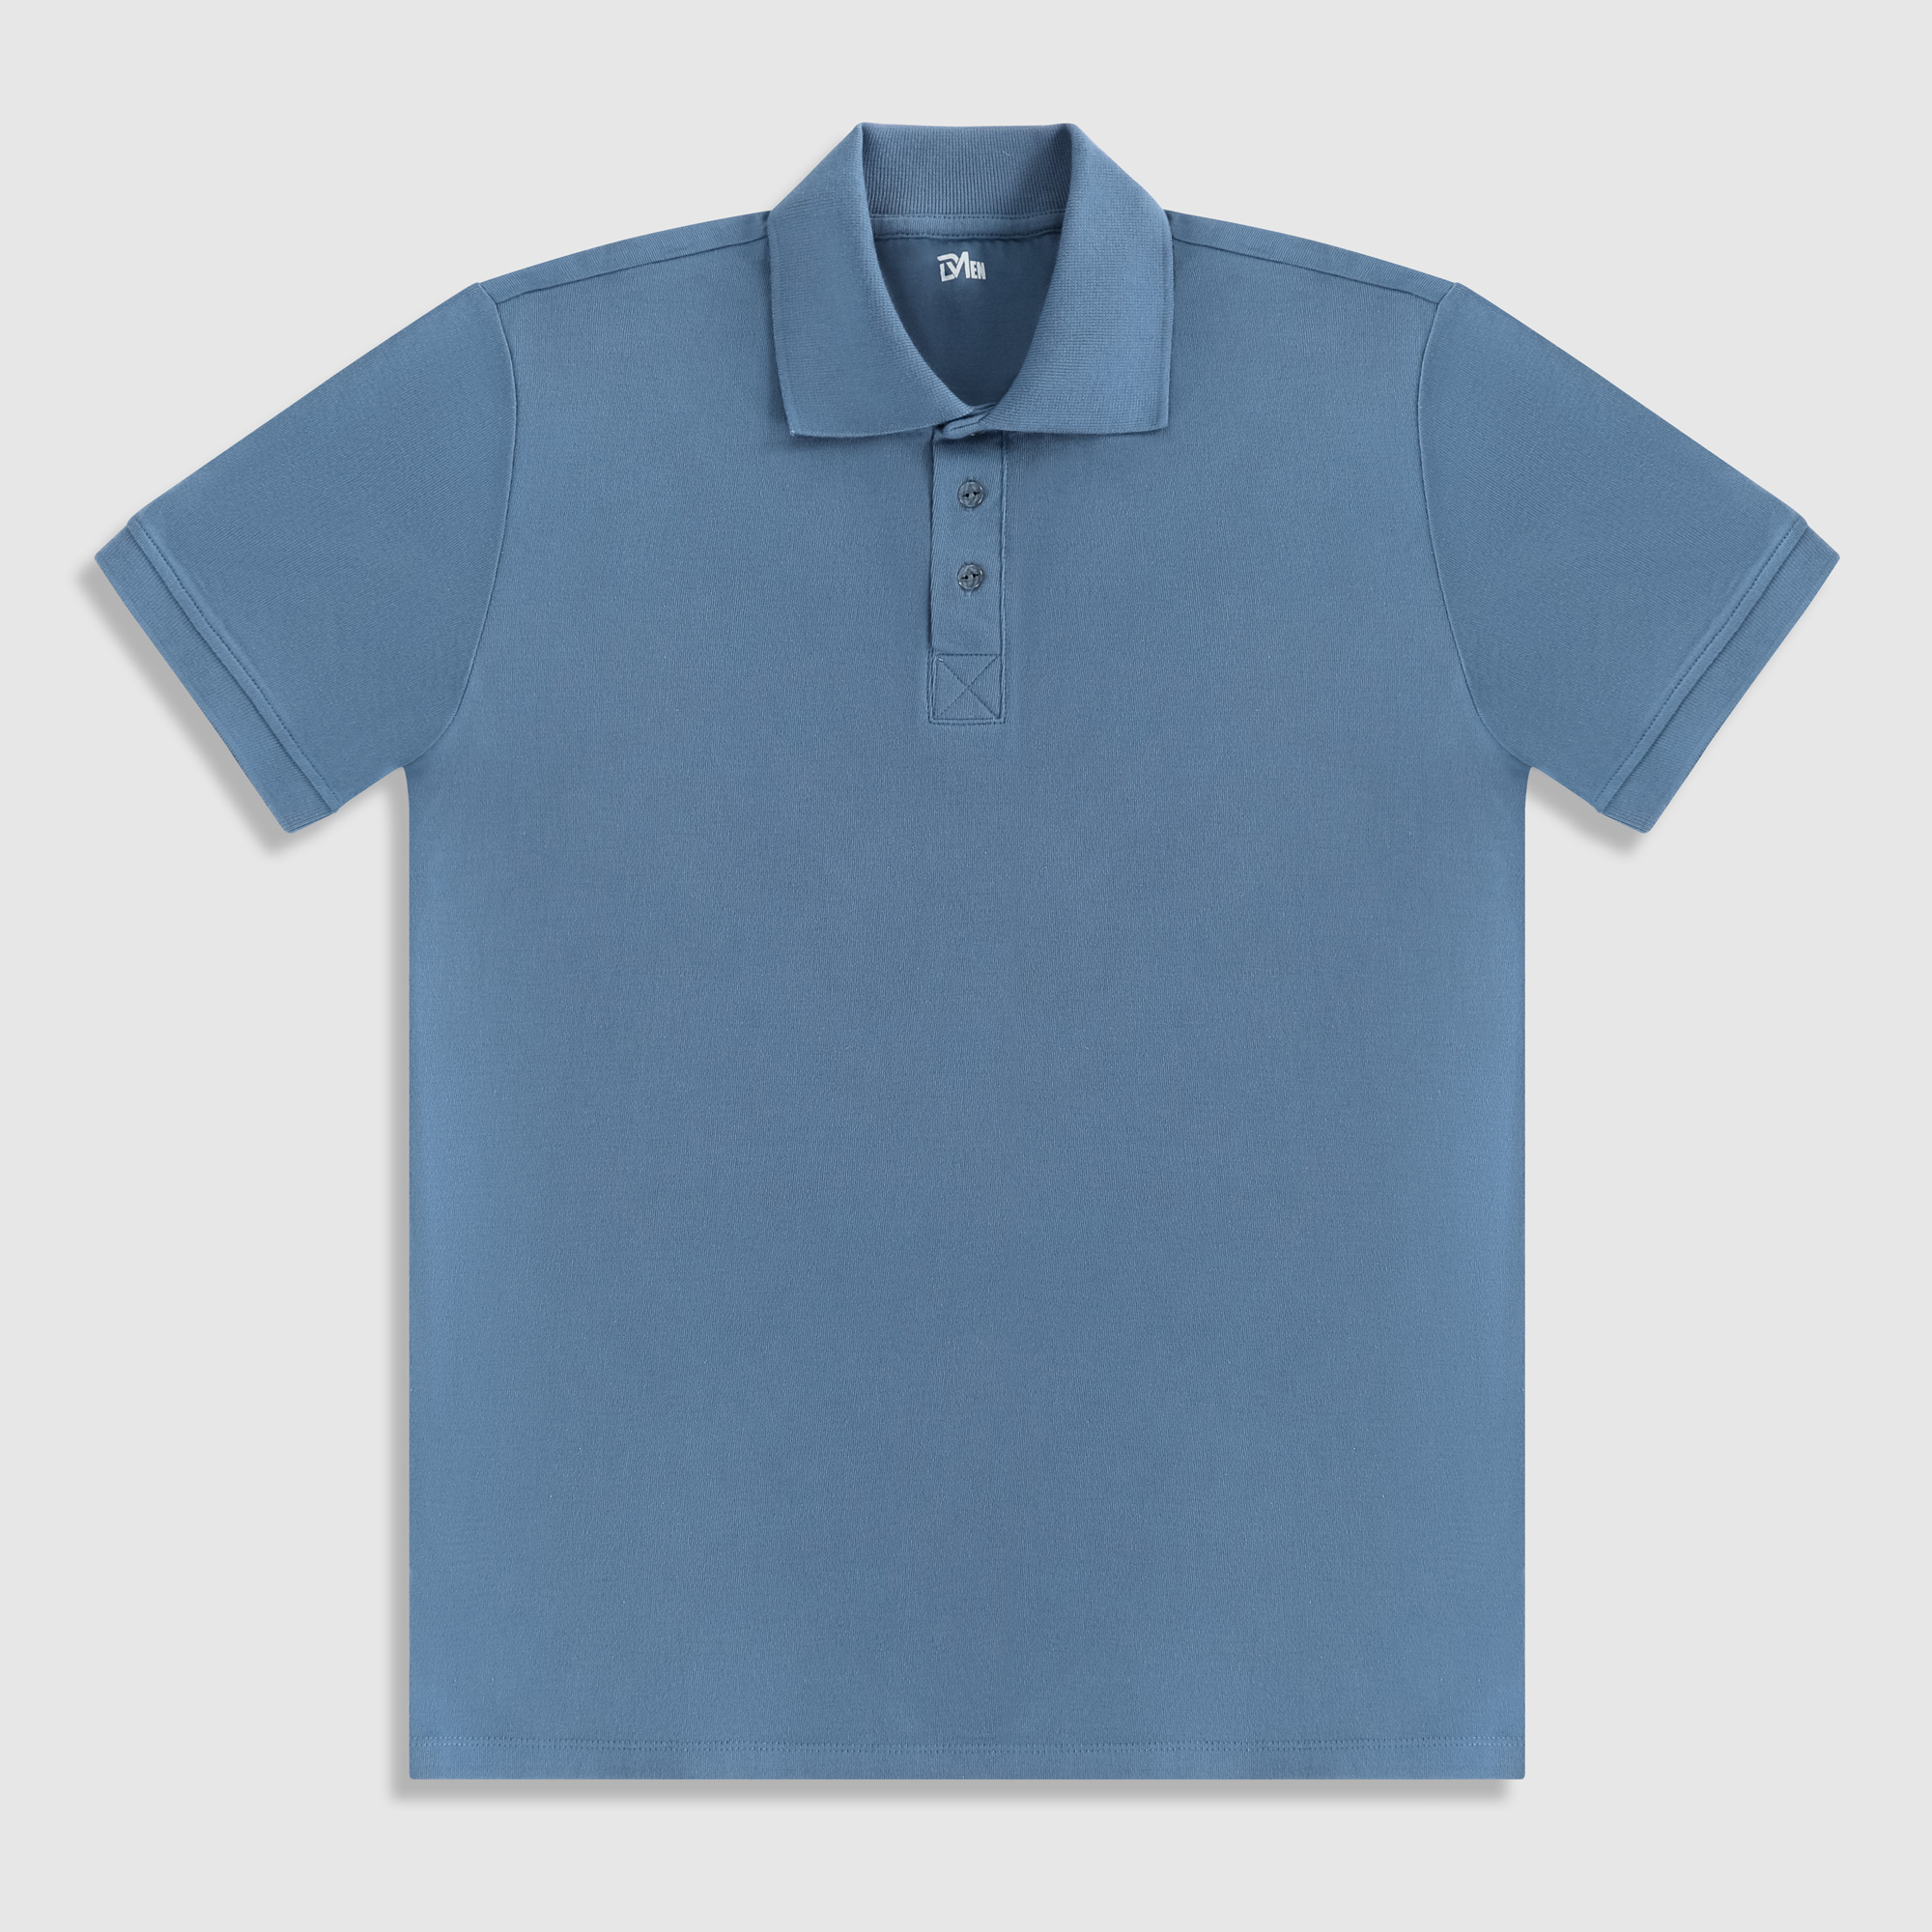 Рубашка мужская Diva Teks поло голубая, цвет голубой, размер XL